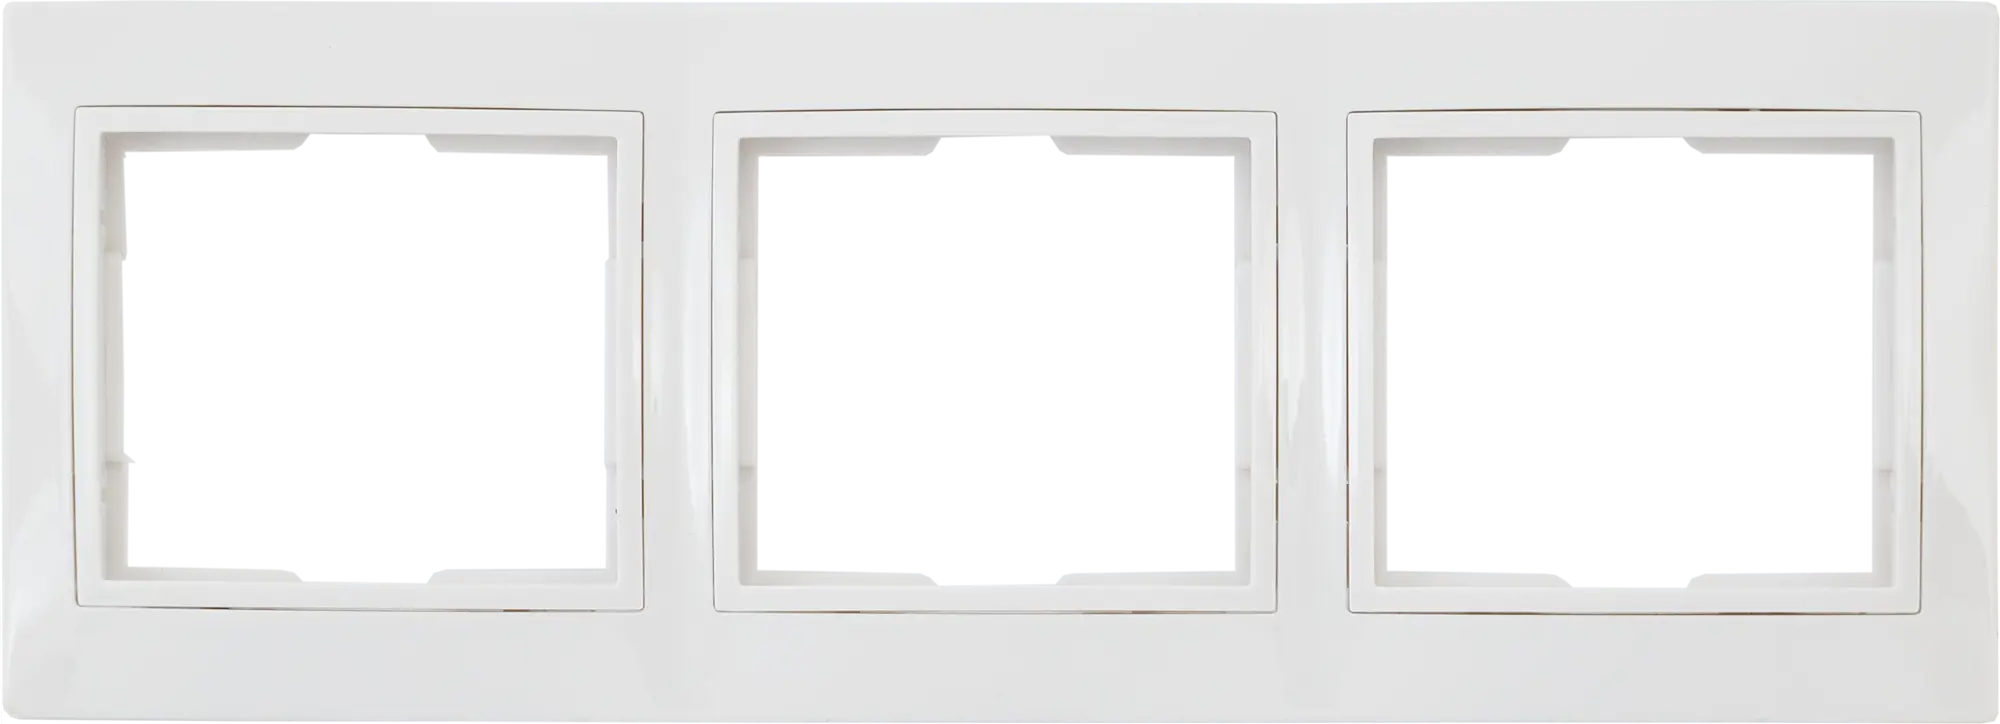 Рамка для розеток и выключателей горизонтальная Таймыр 3 поста, цвет белый горизонтальная рамка intro 150405 на 4 поста су plano антрацит б0044581